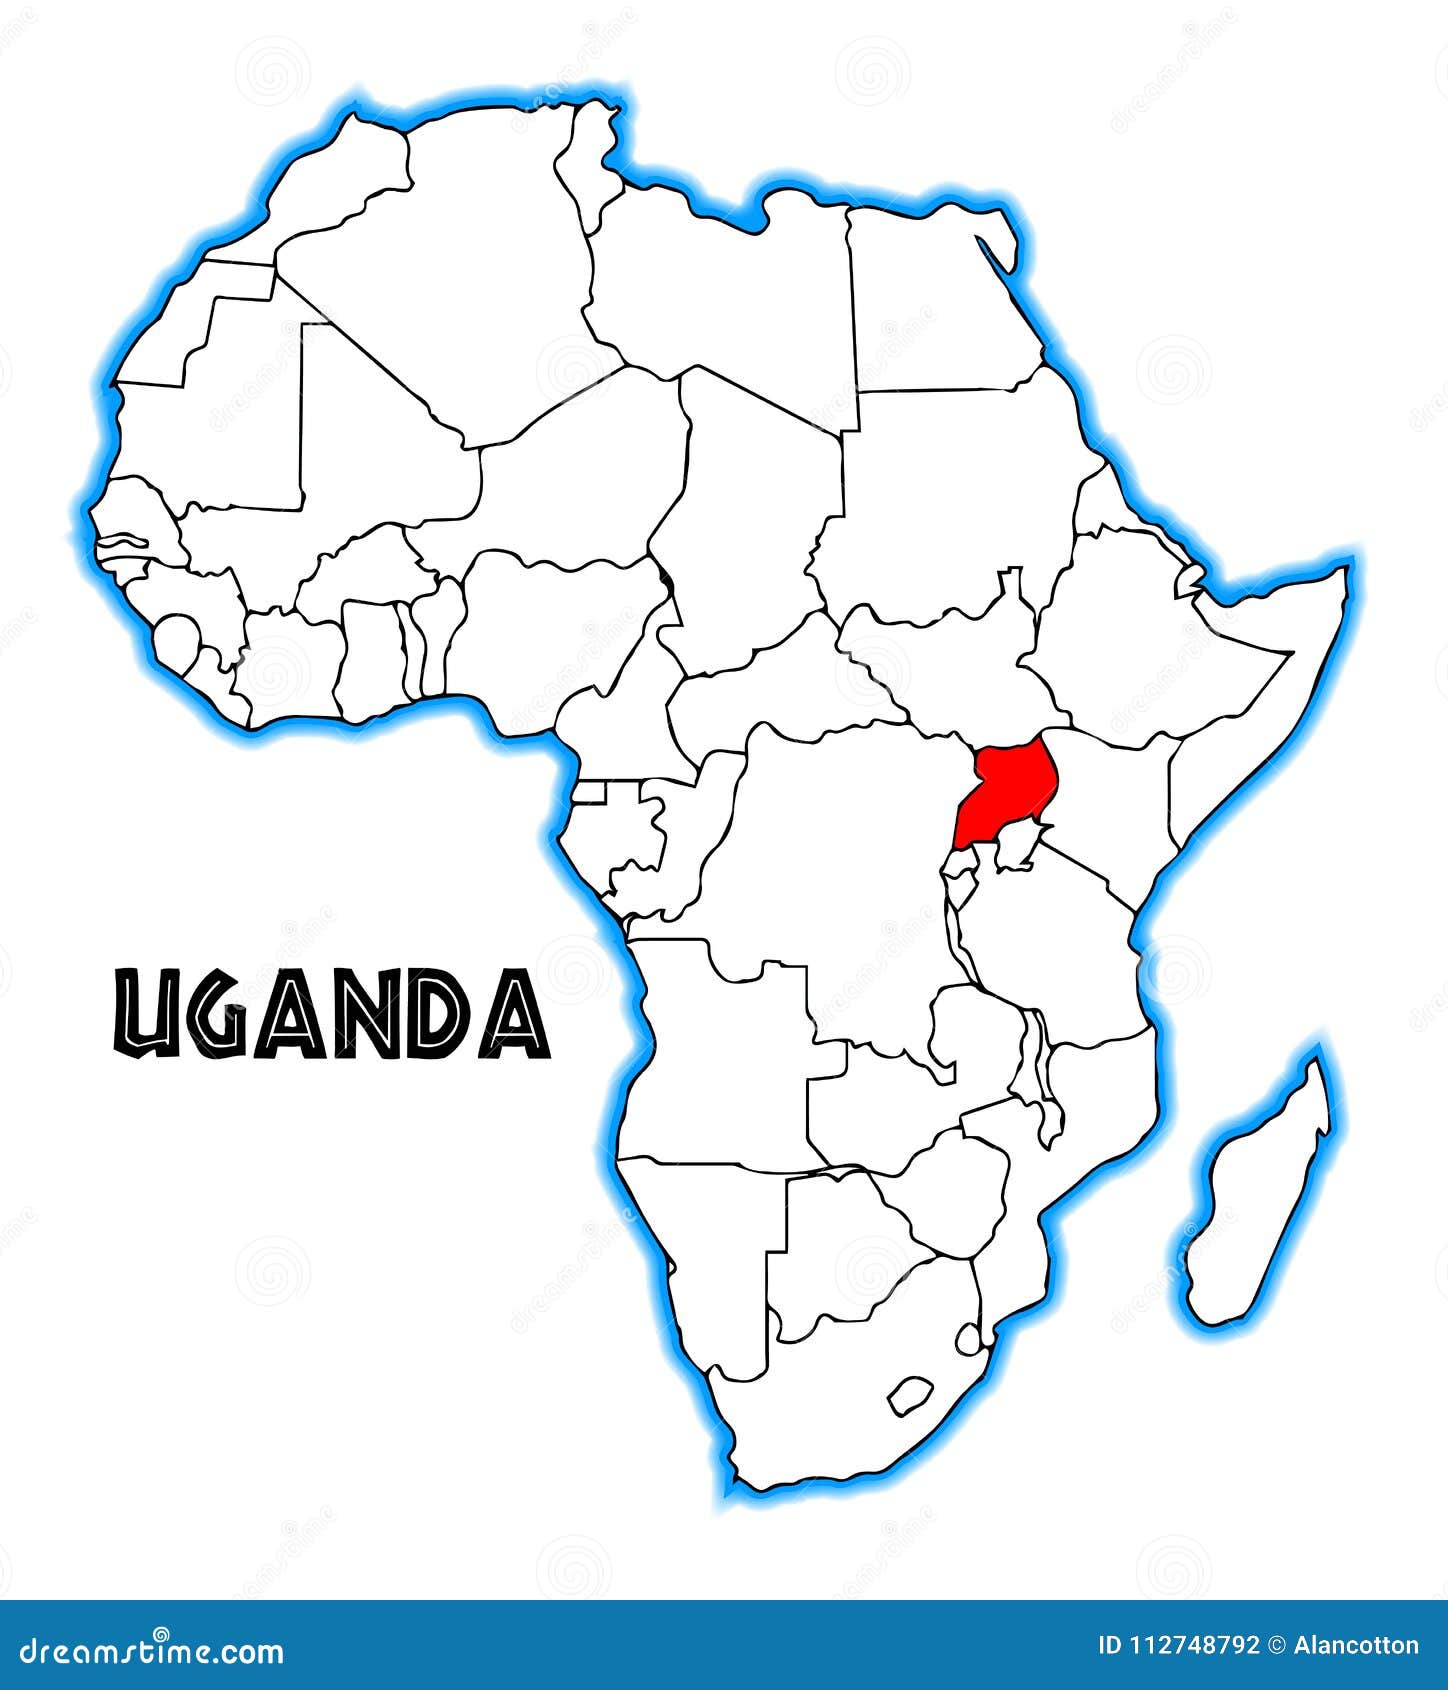 Uganda Mapa - Un Mapa De Africa Con Un Pais Seleccionado De Uganda Fotos Retratos Imagenes Y ...